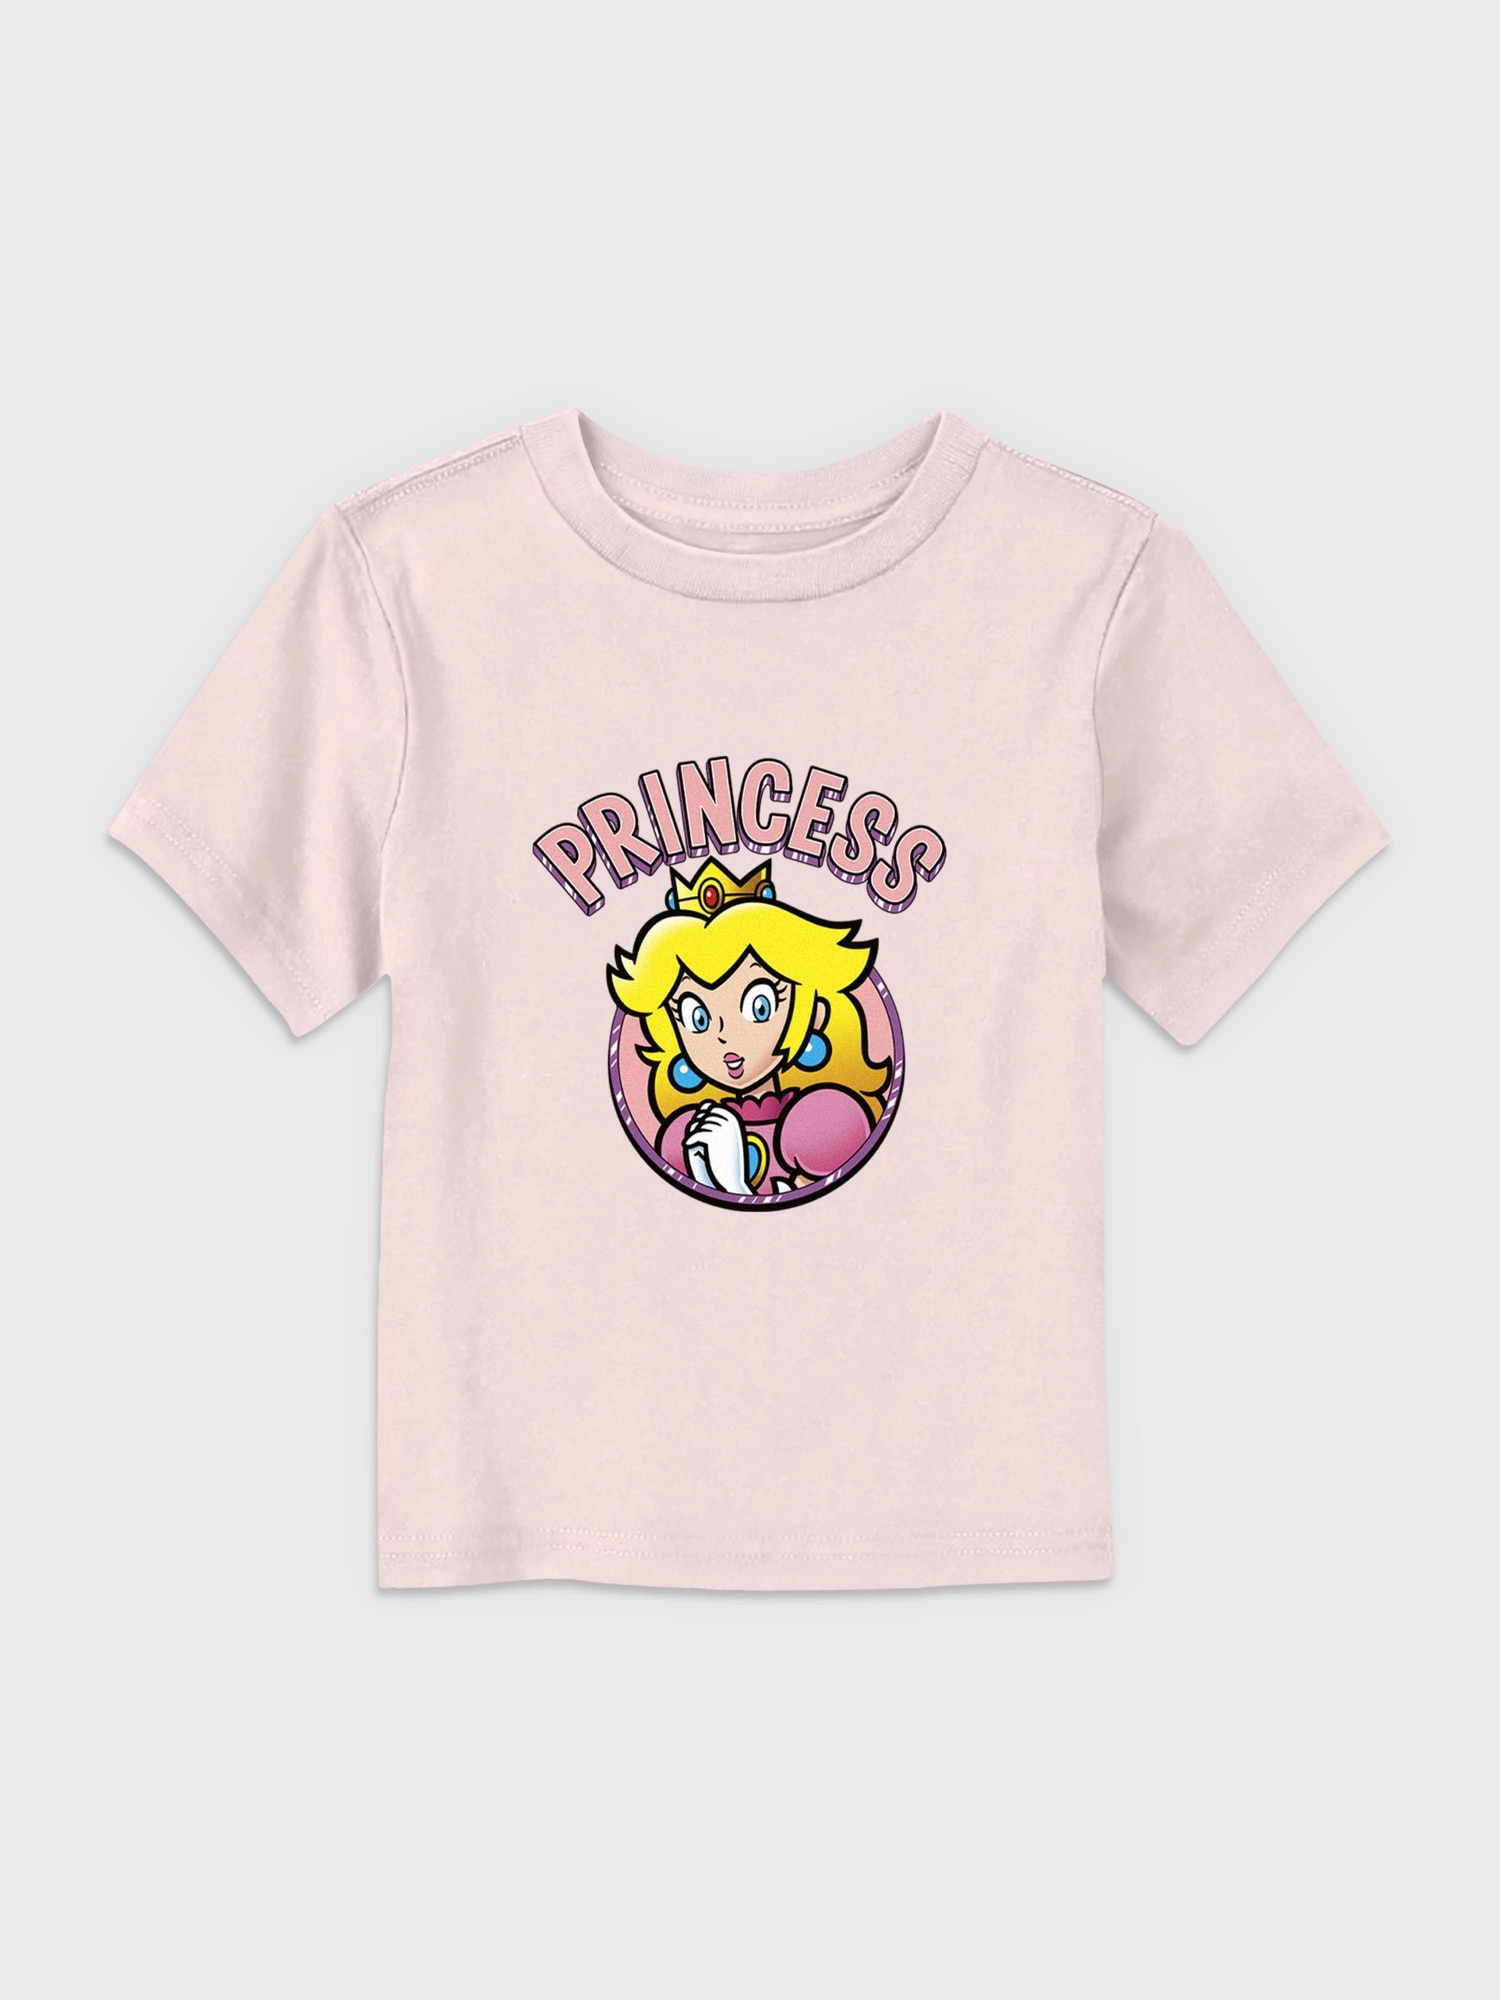 Toddler Nintendo Princess Peach Graphic Tee